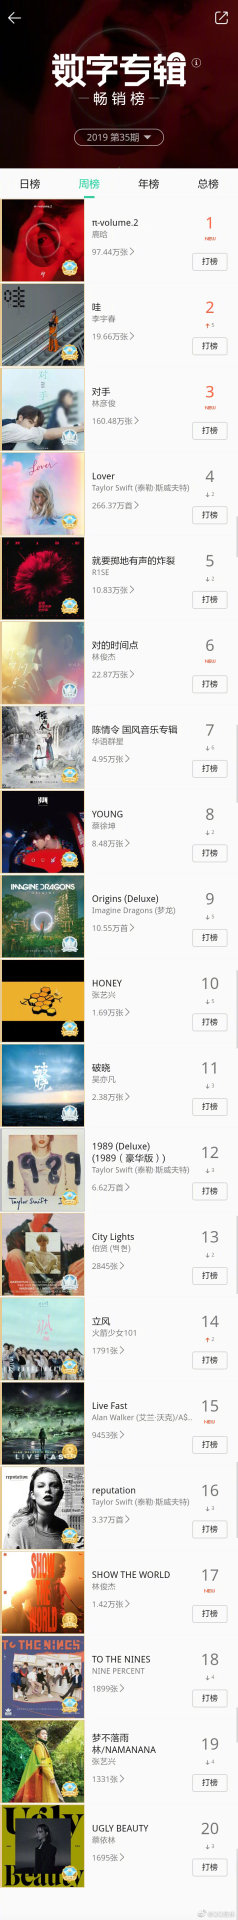 Qq Music Top Chart